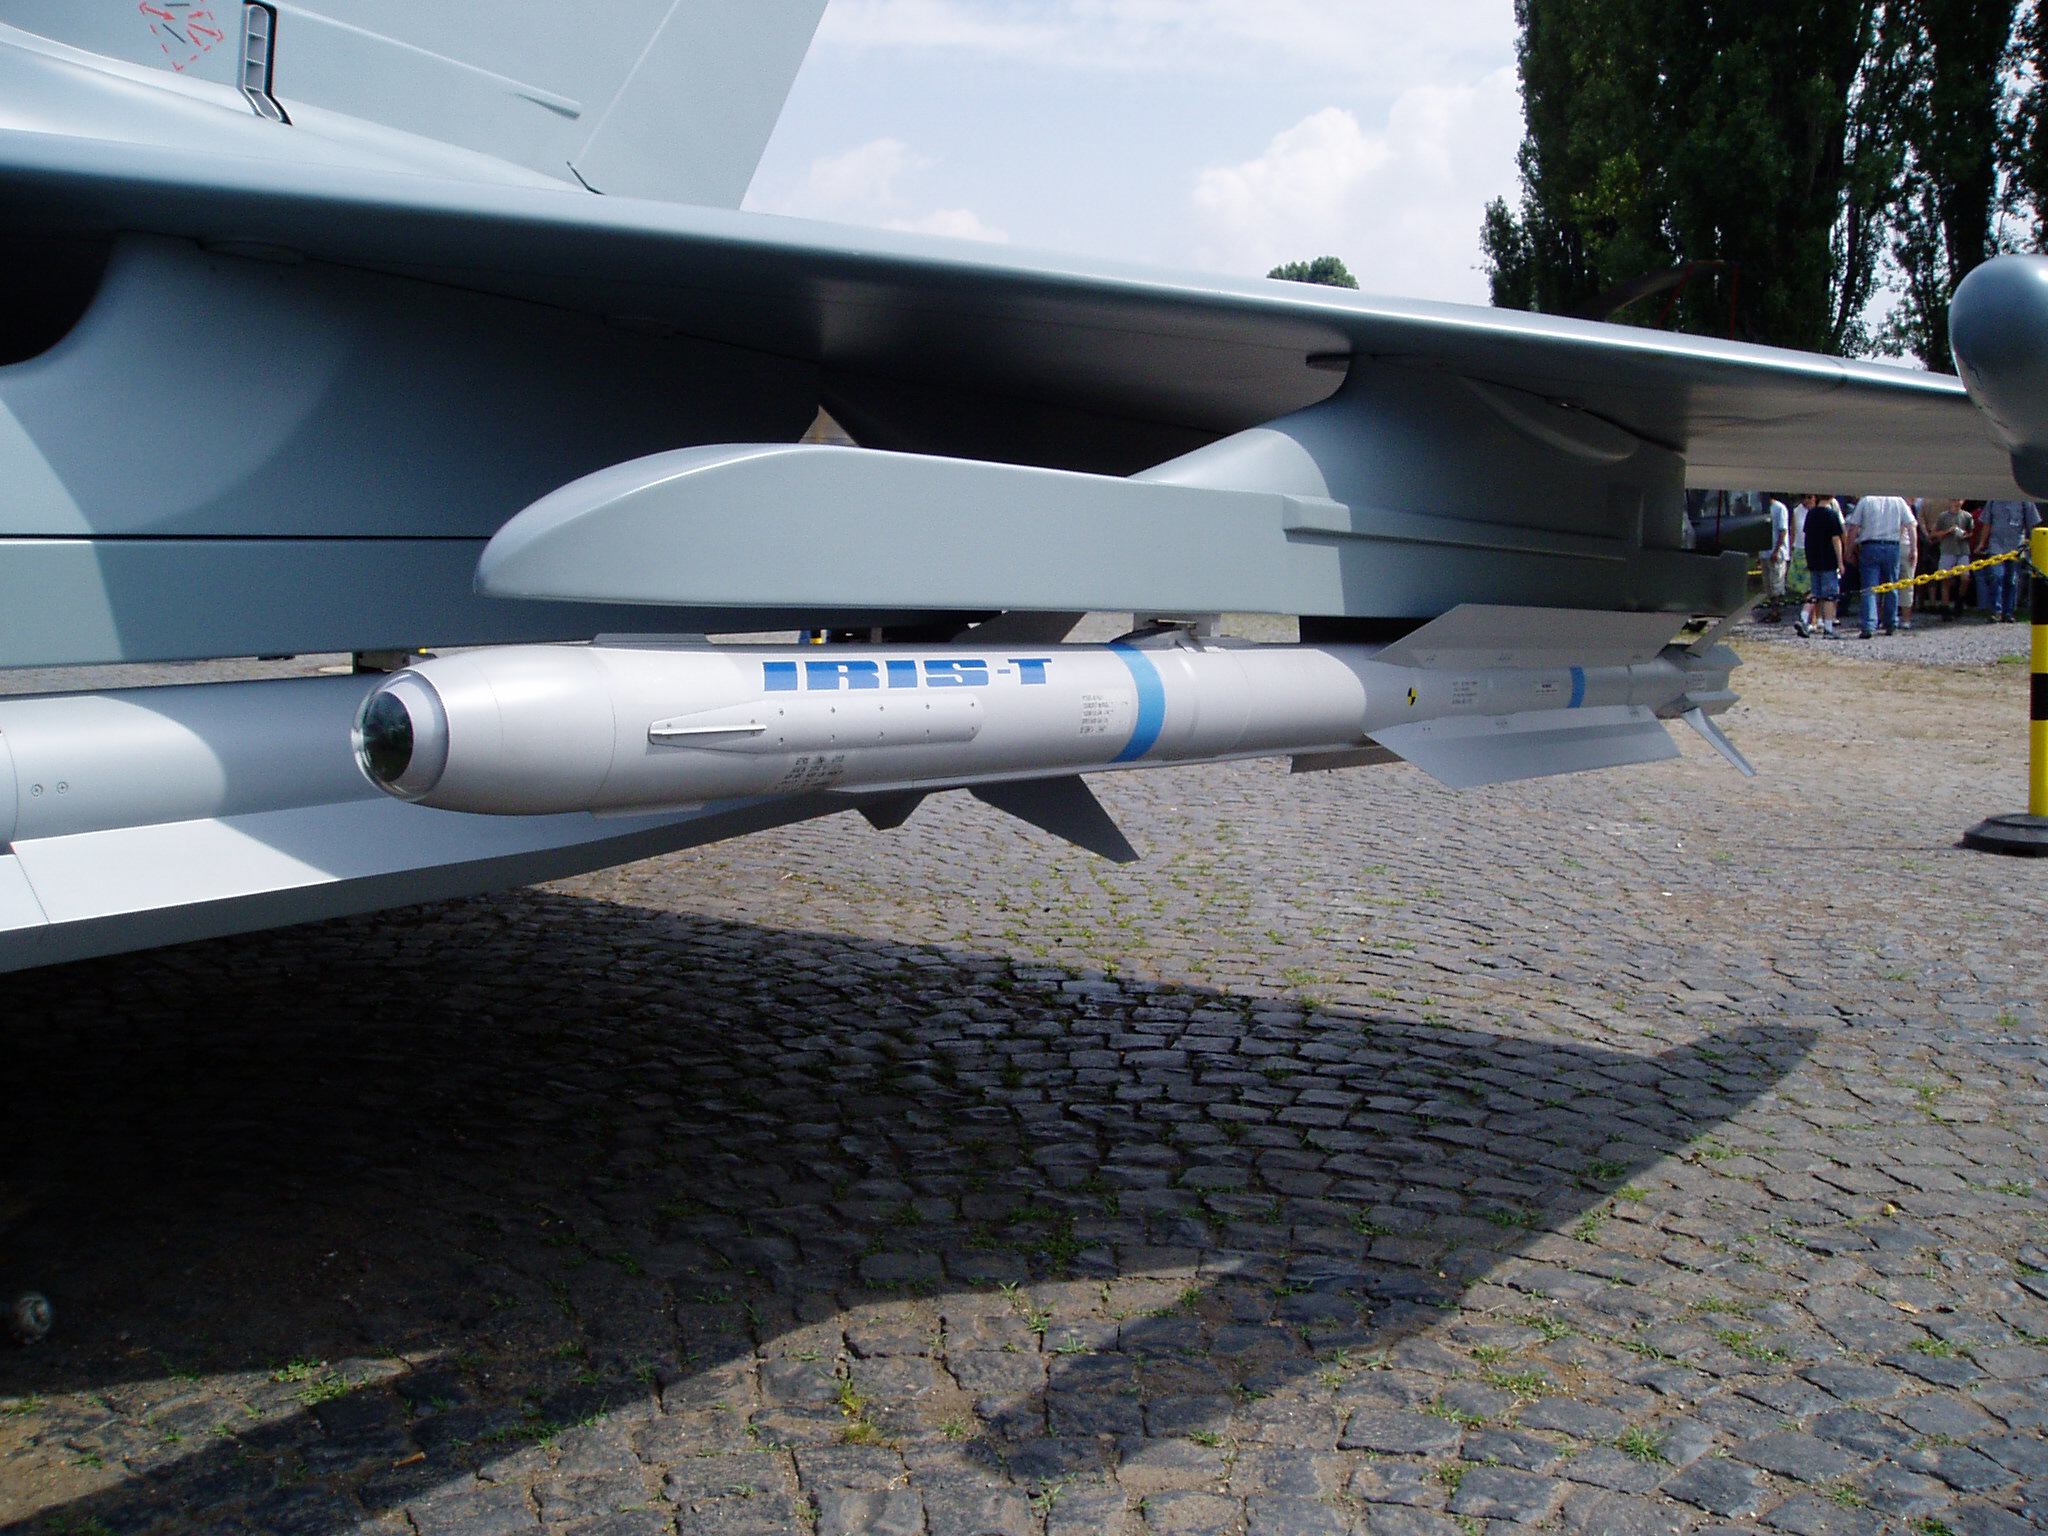 IRIS-T_air-to-air-missile.jpg